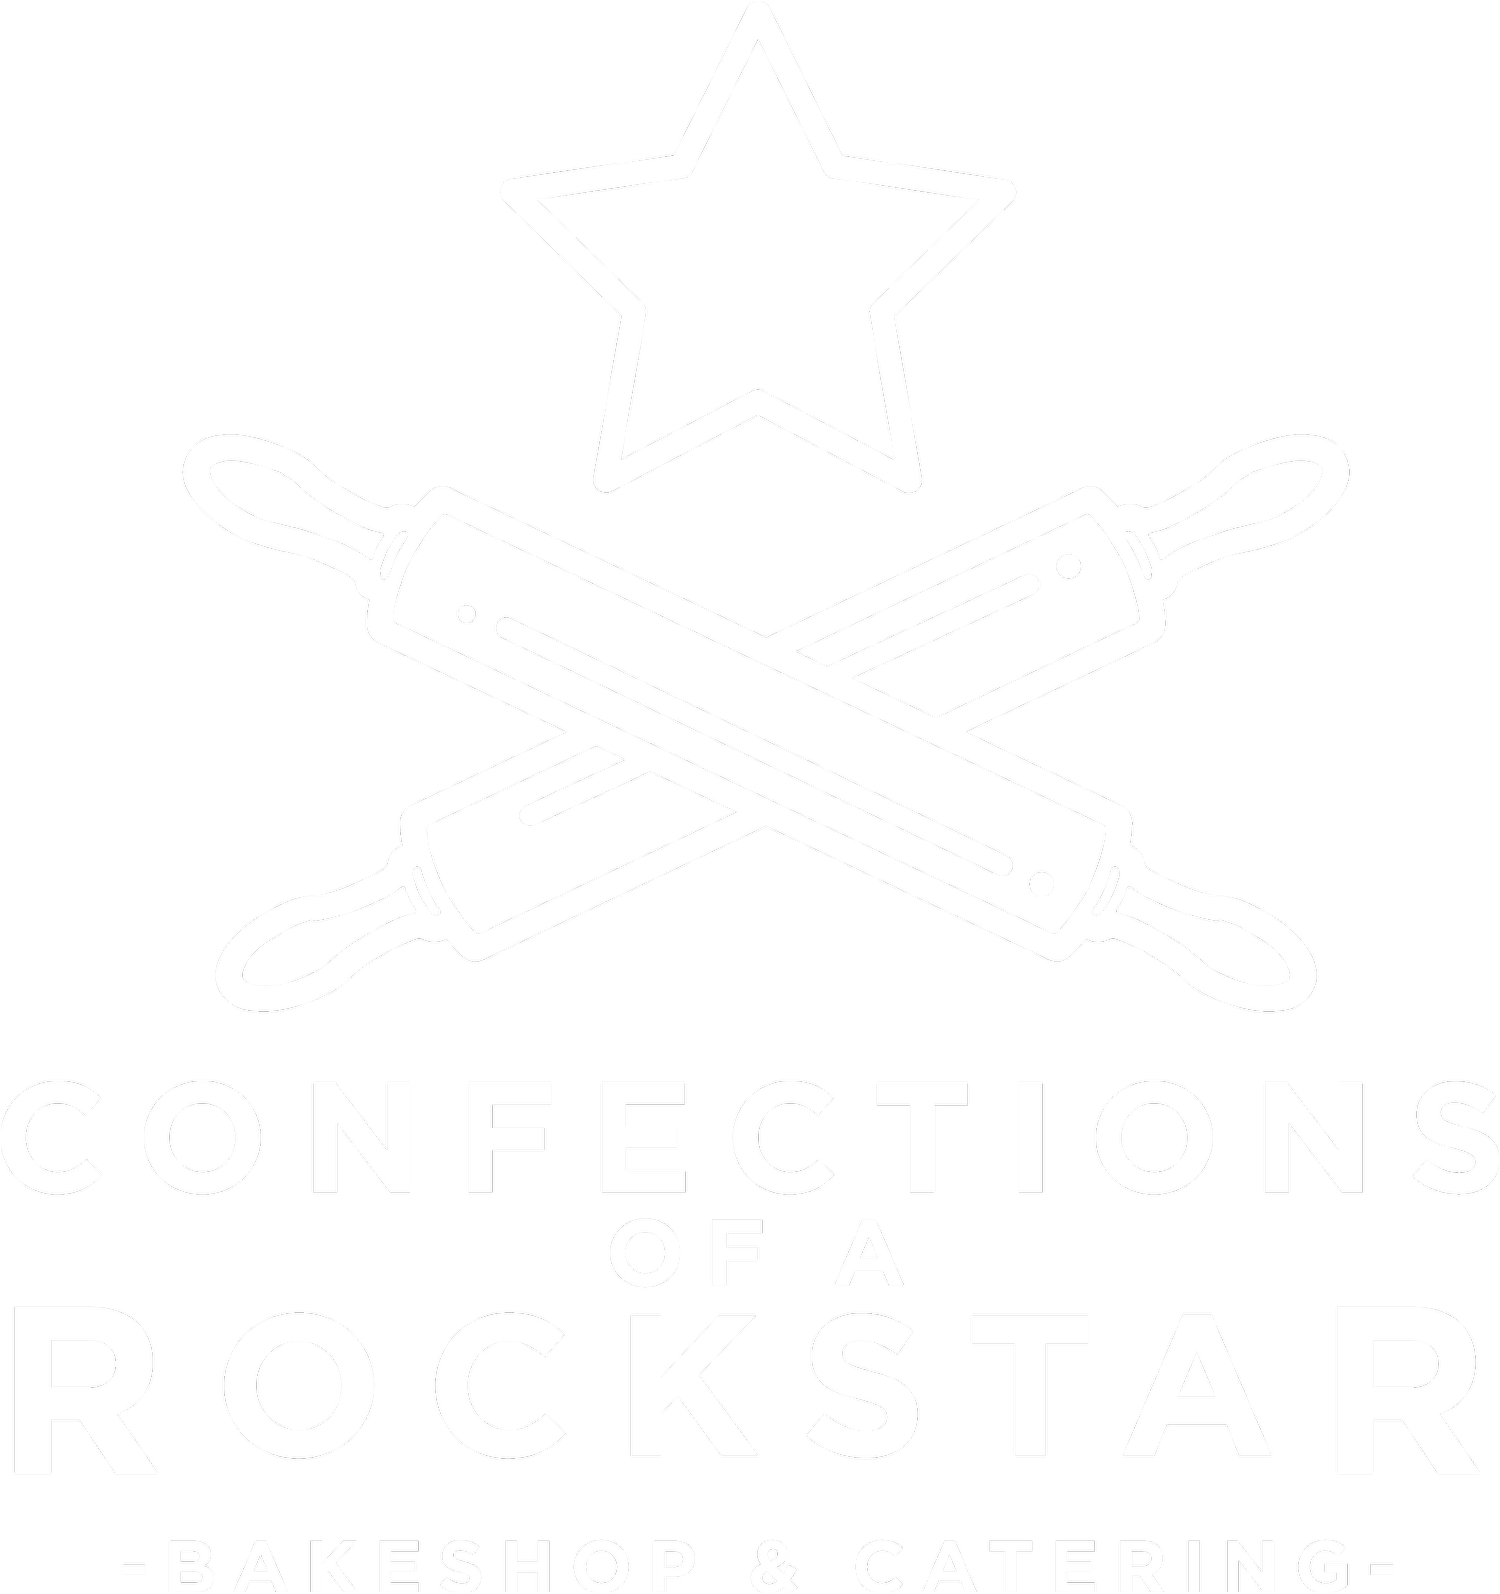 CONFECTIONS OF A ROCKSTAR